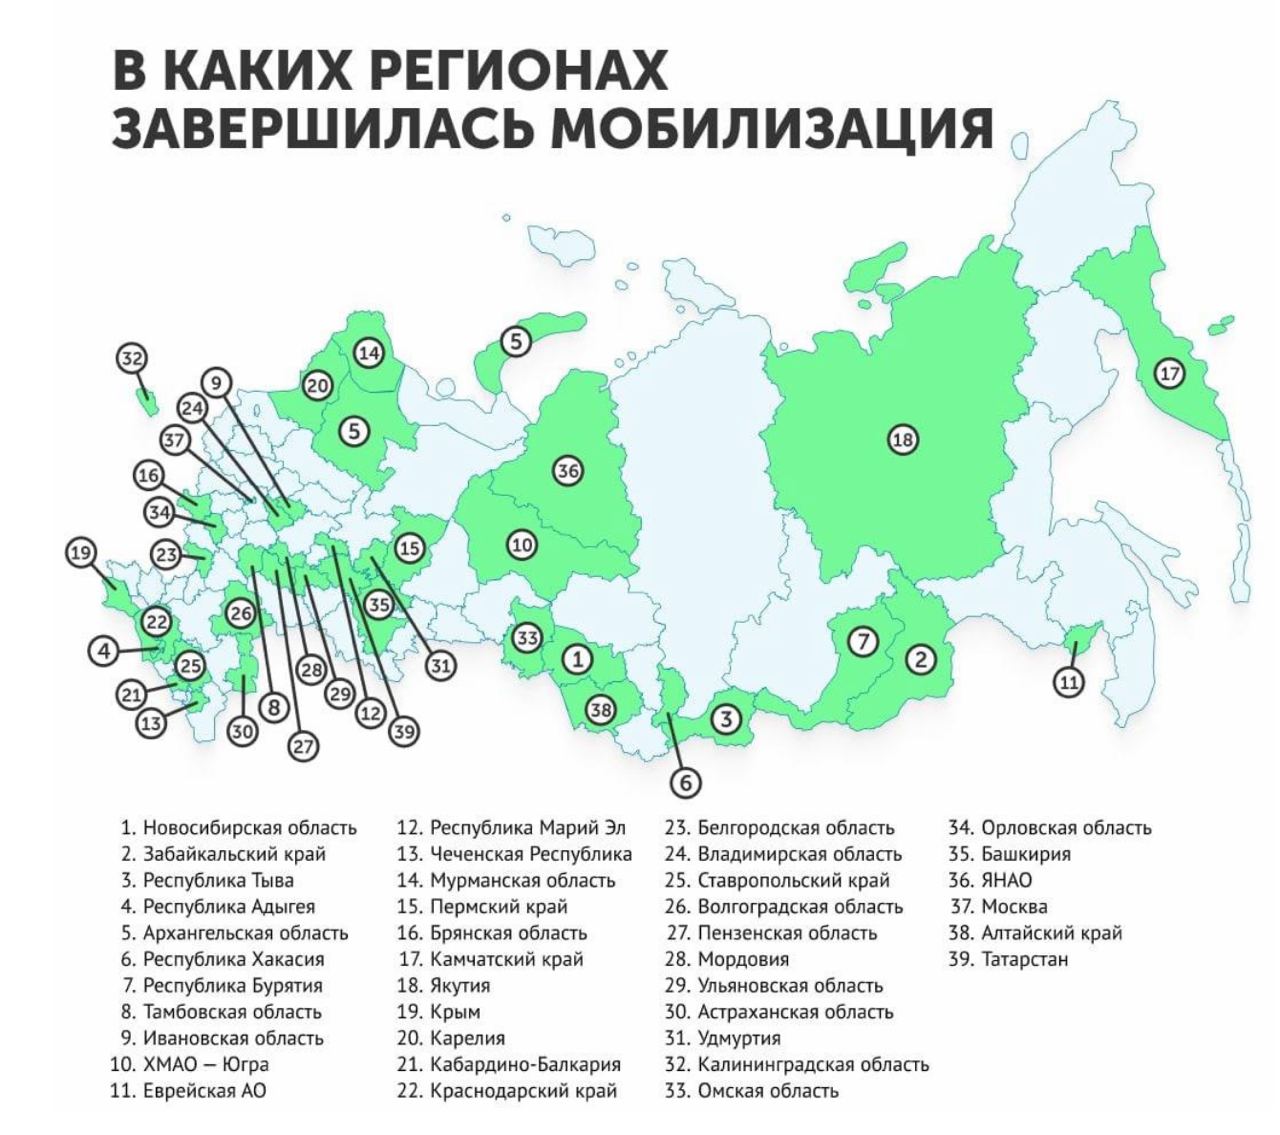 Какие новые регионы вошли в состав россии. Мобилизация по регионам России. Карта России с регионами. Количество мобилизированных по регионам. Регионы по мобилизации в РФ 2022.